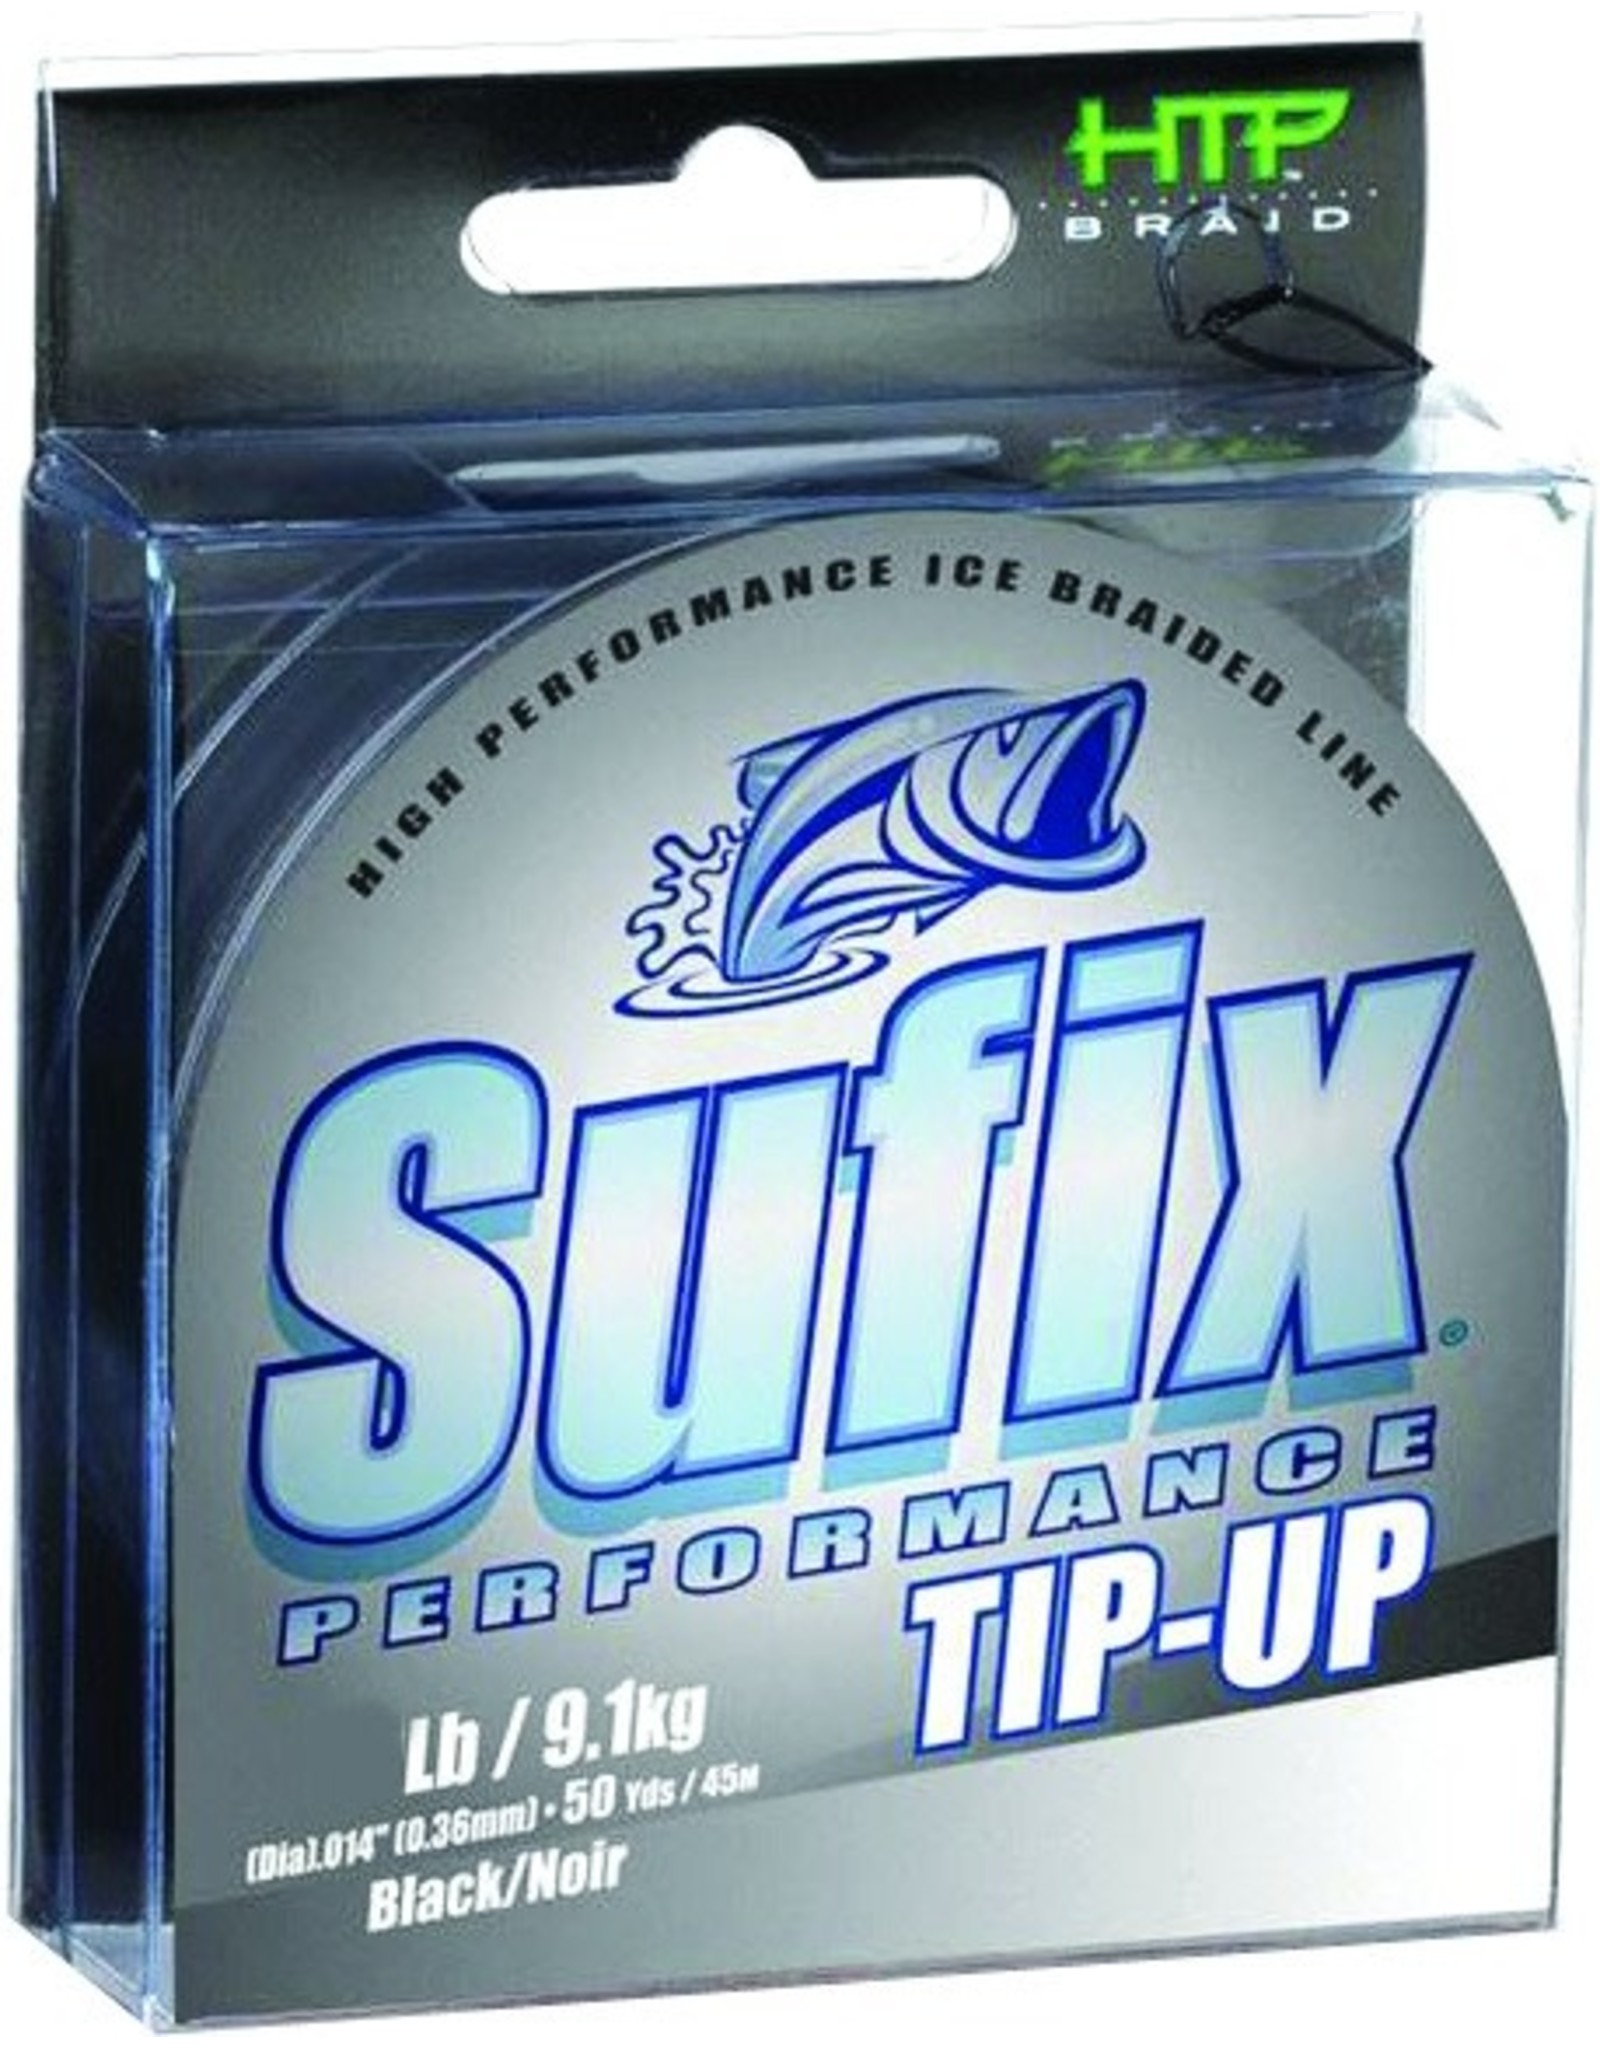 Sufix Sufix Performance Tip Up - 30 lb test